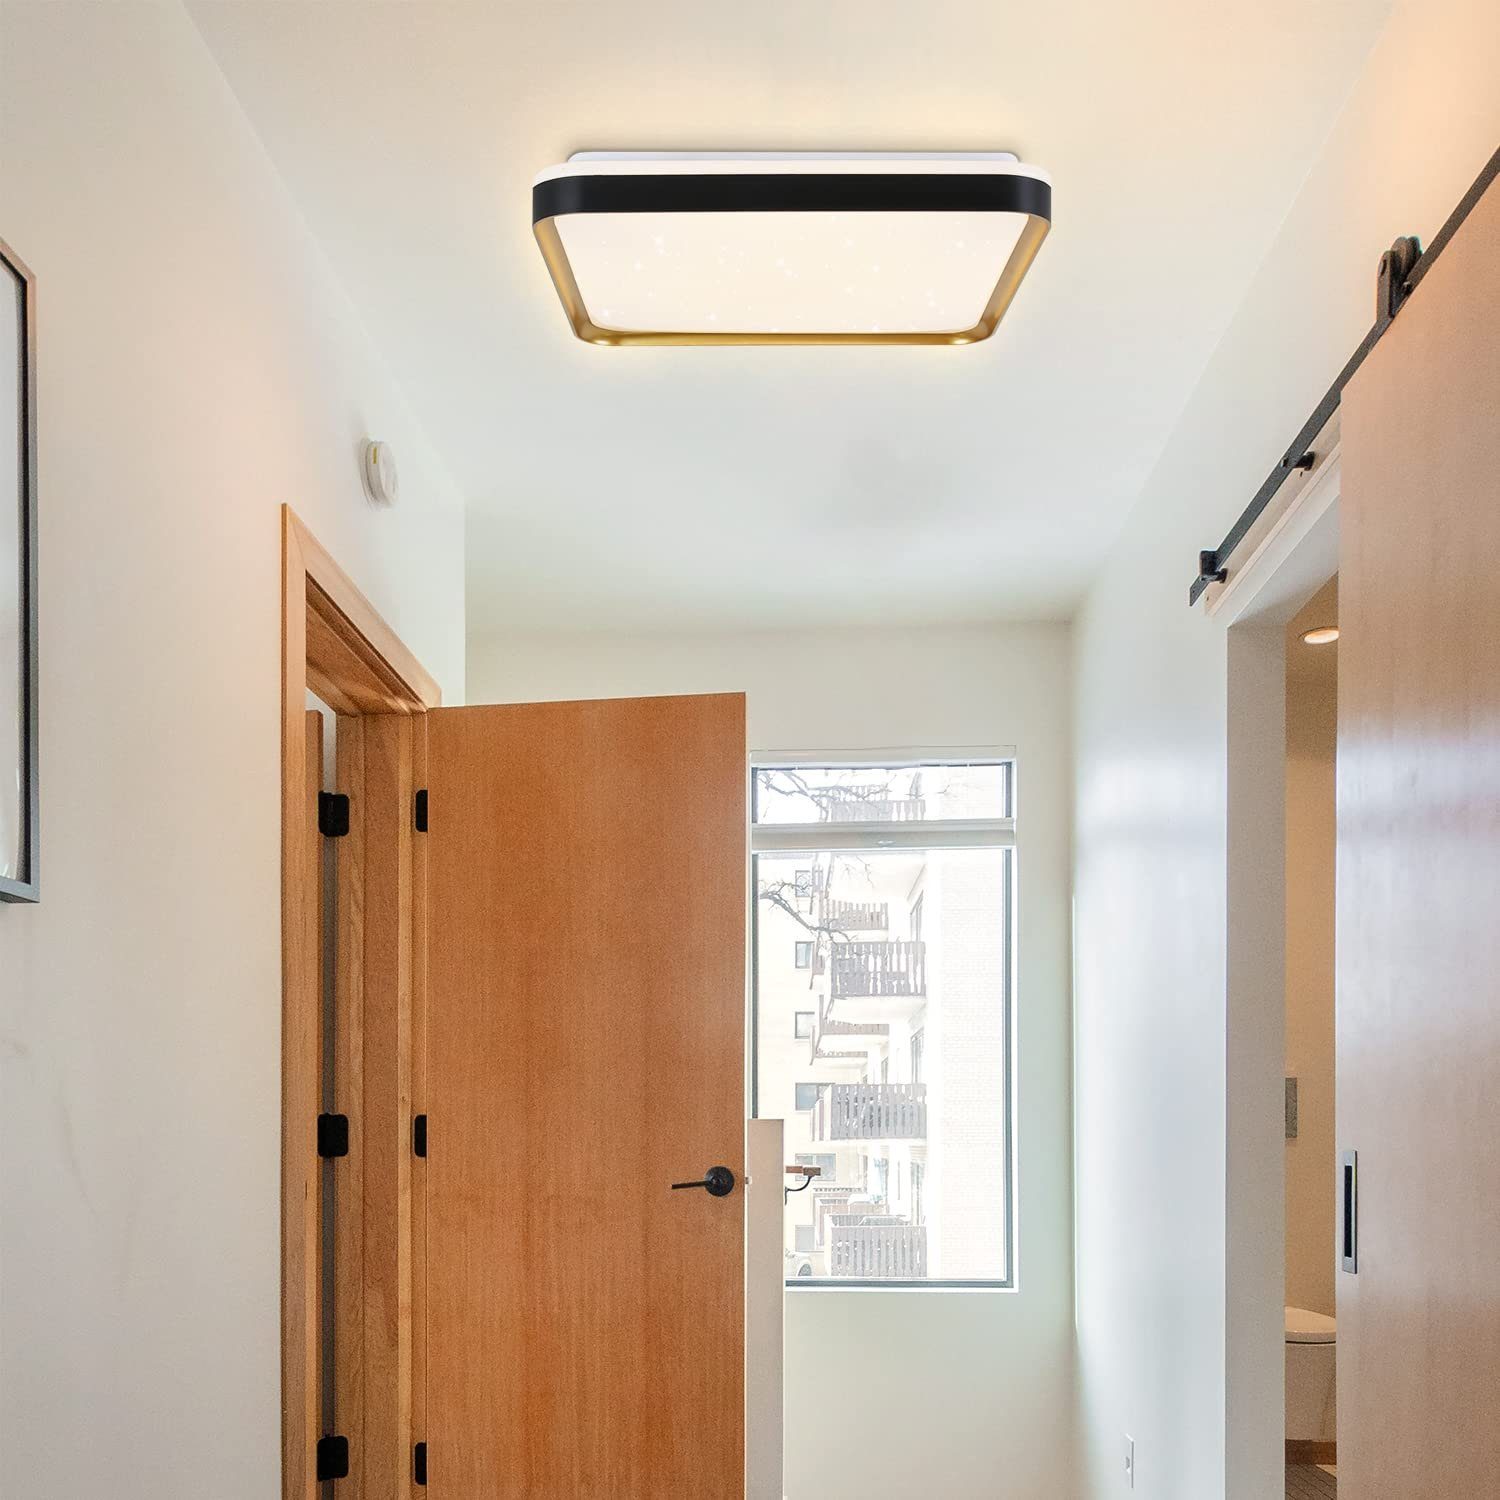 ZMH Deckenleuchte LED Deckenleuchte Dimmbar Schwarzgold Eckig mit Wohnzimmer Fernbedienung